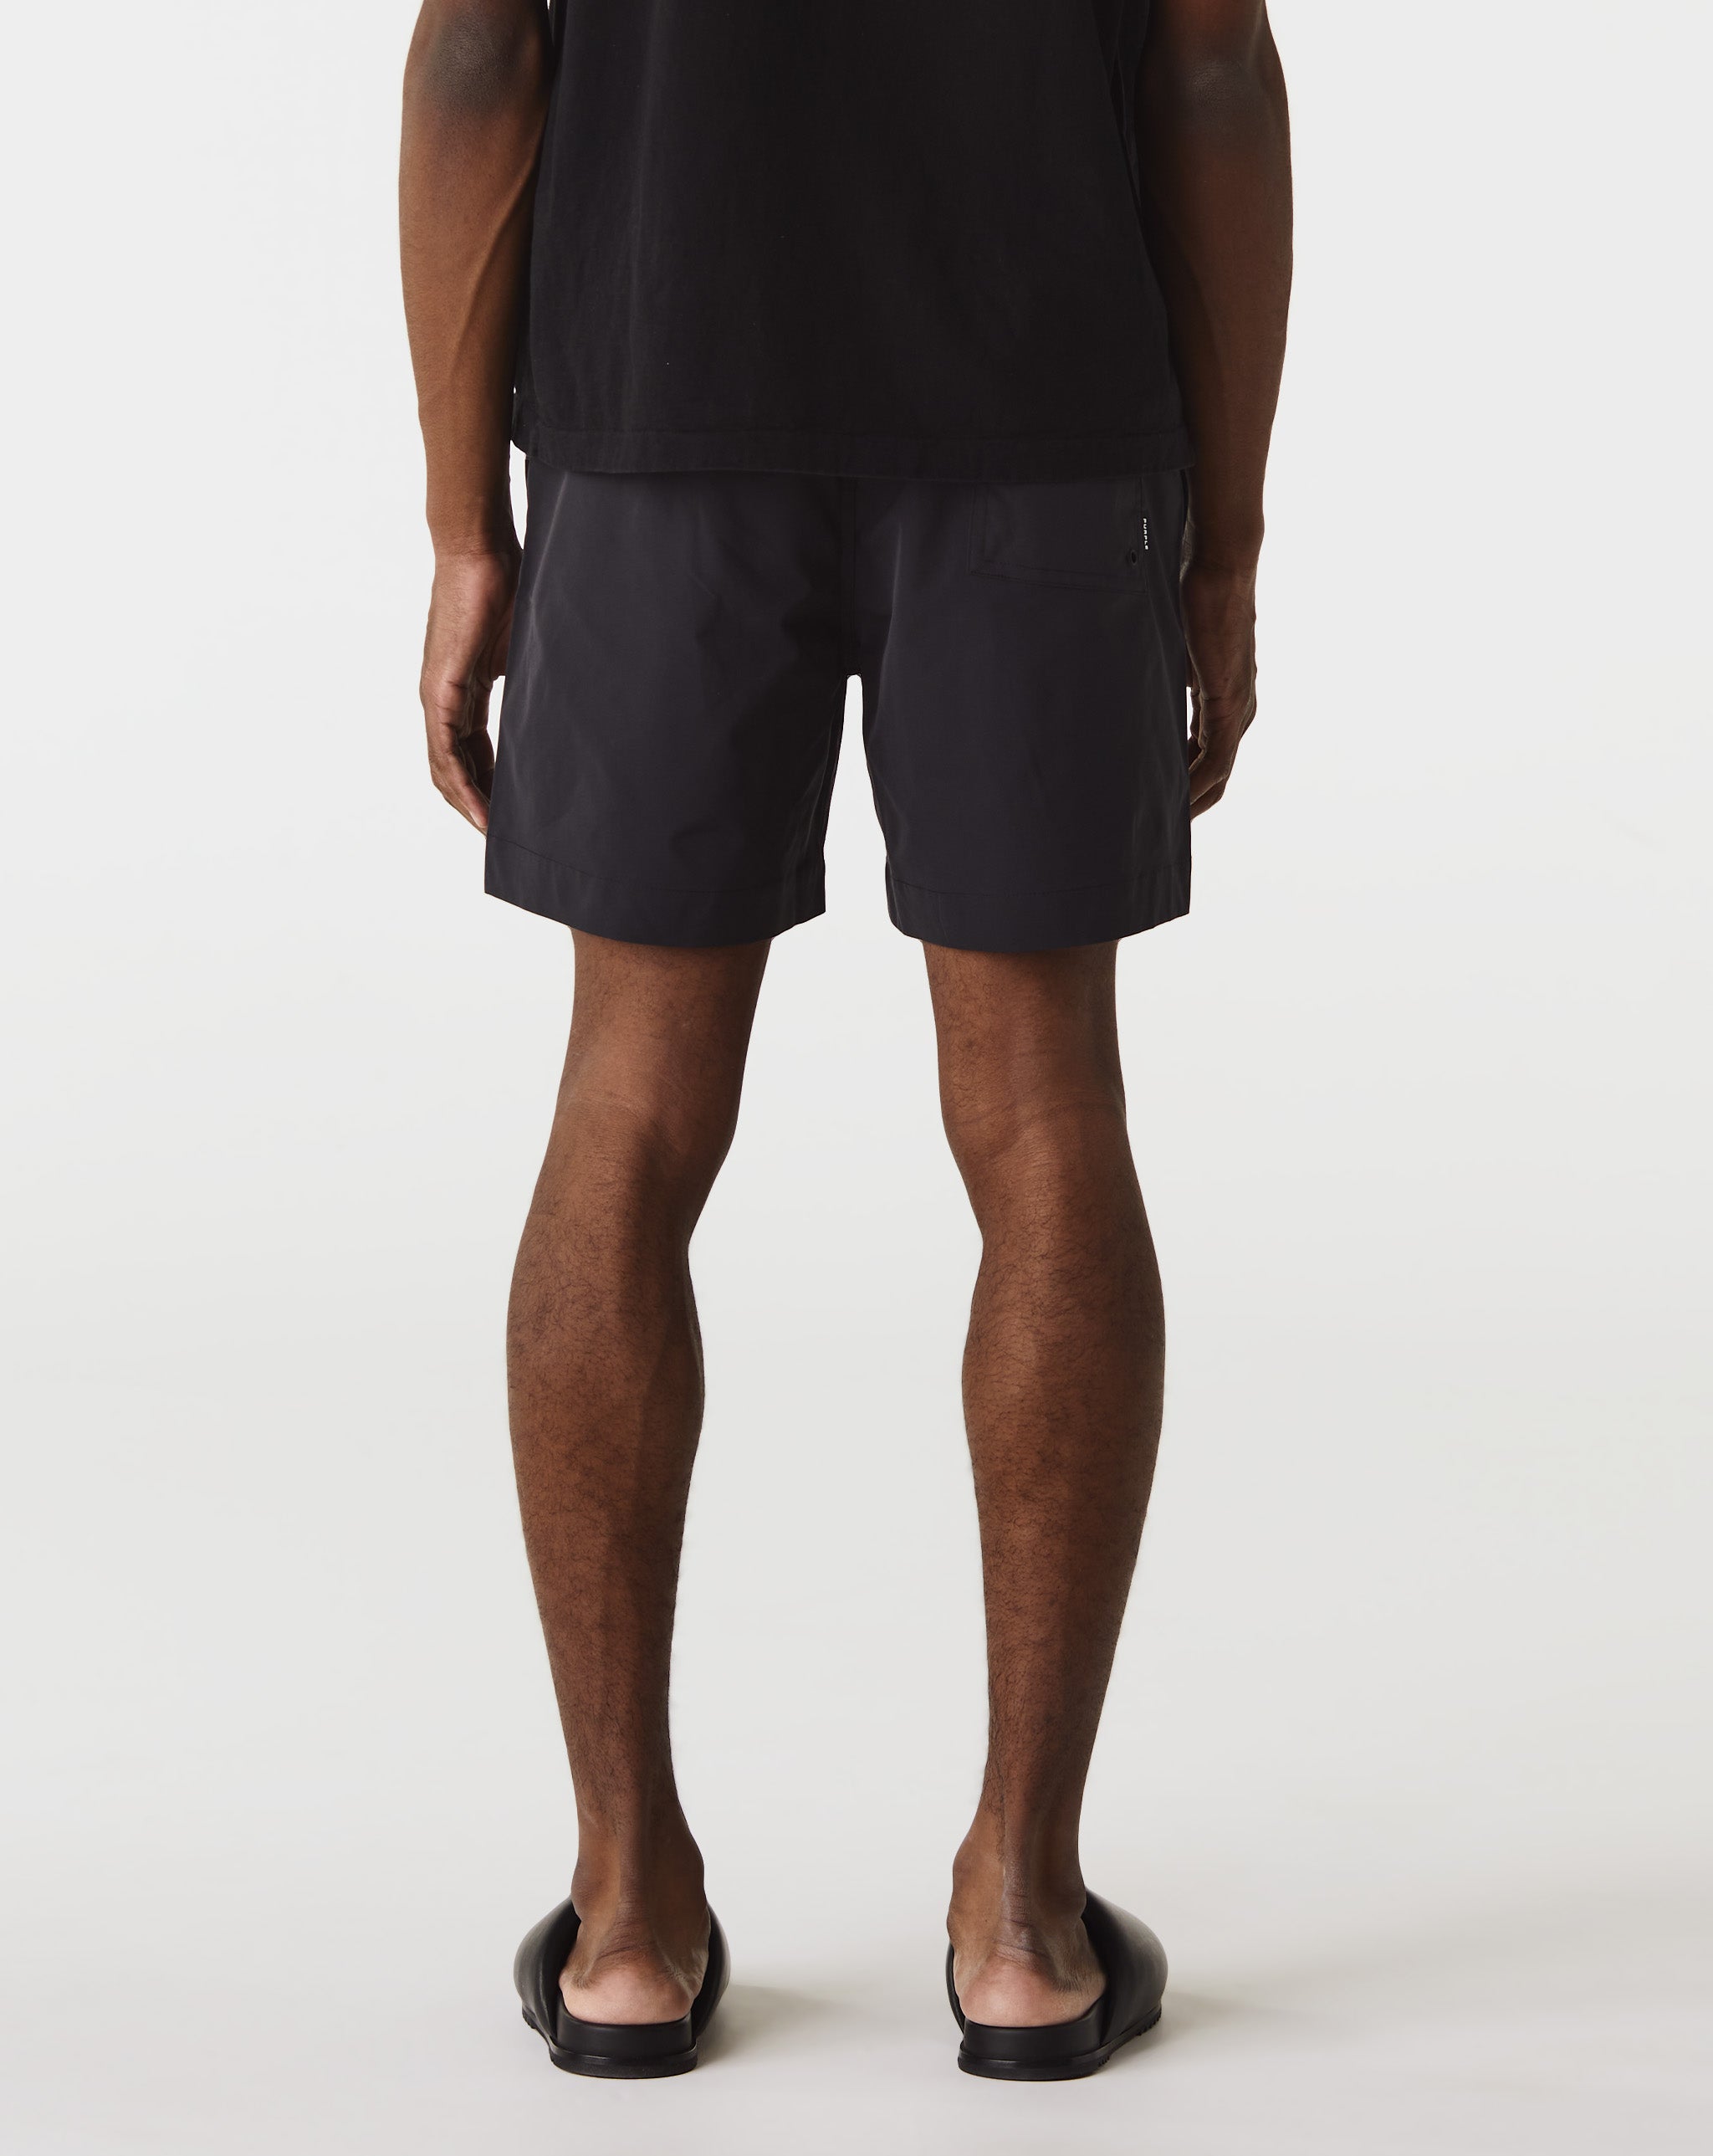 Purple Brand Mesh Sport Shorts  - Cheap Urlfreeze Jordan outlet